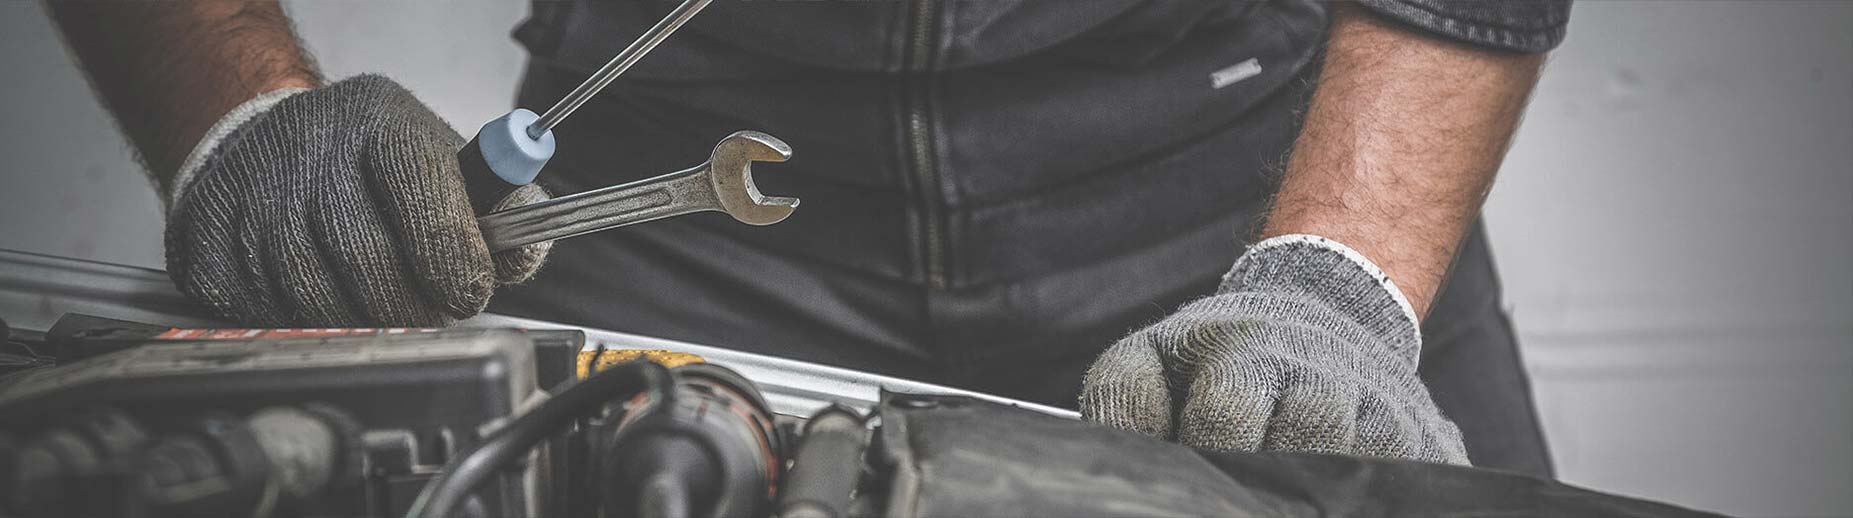 Kitchener Car Repair, Auto Mechanic and Transmission Repair